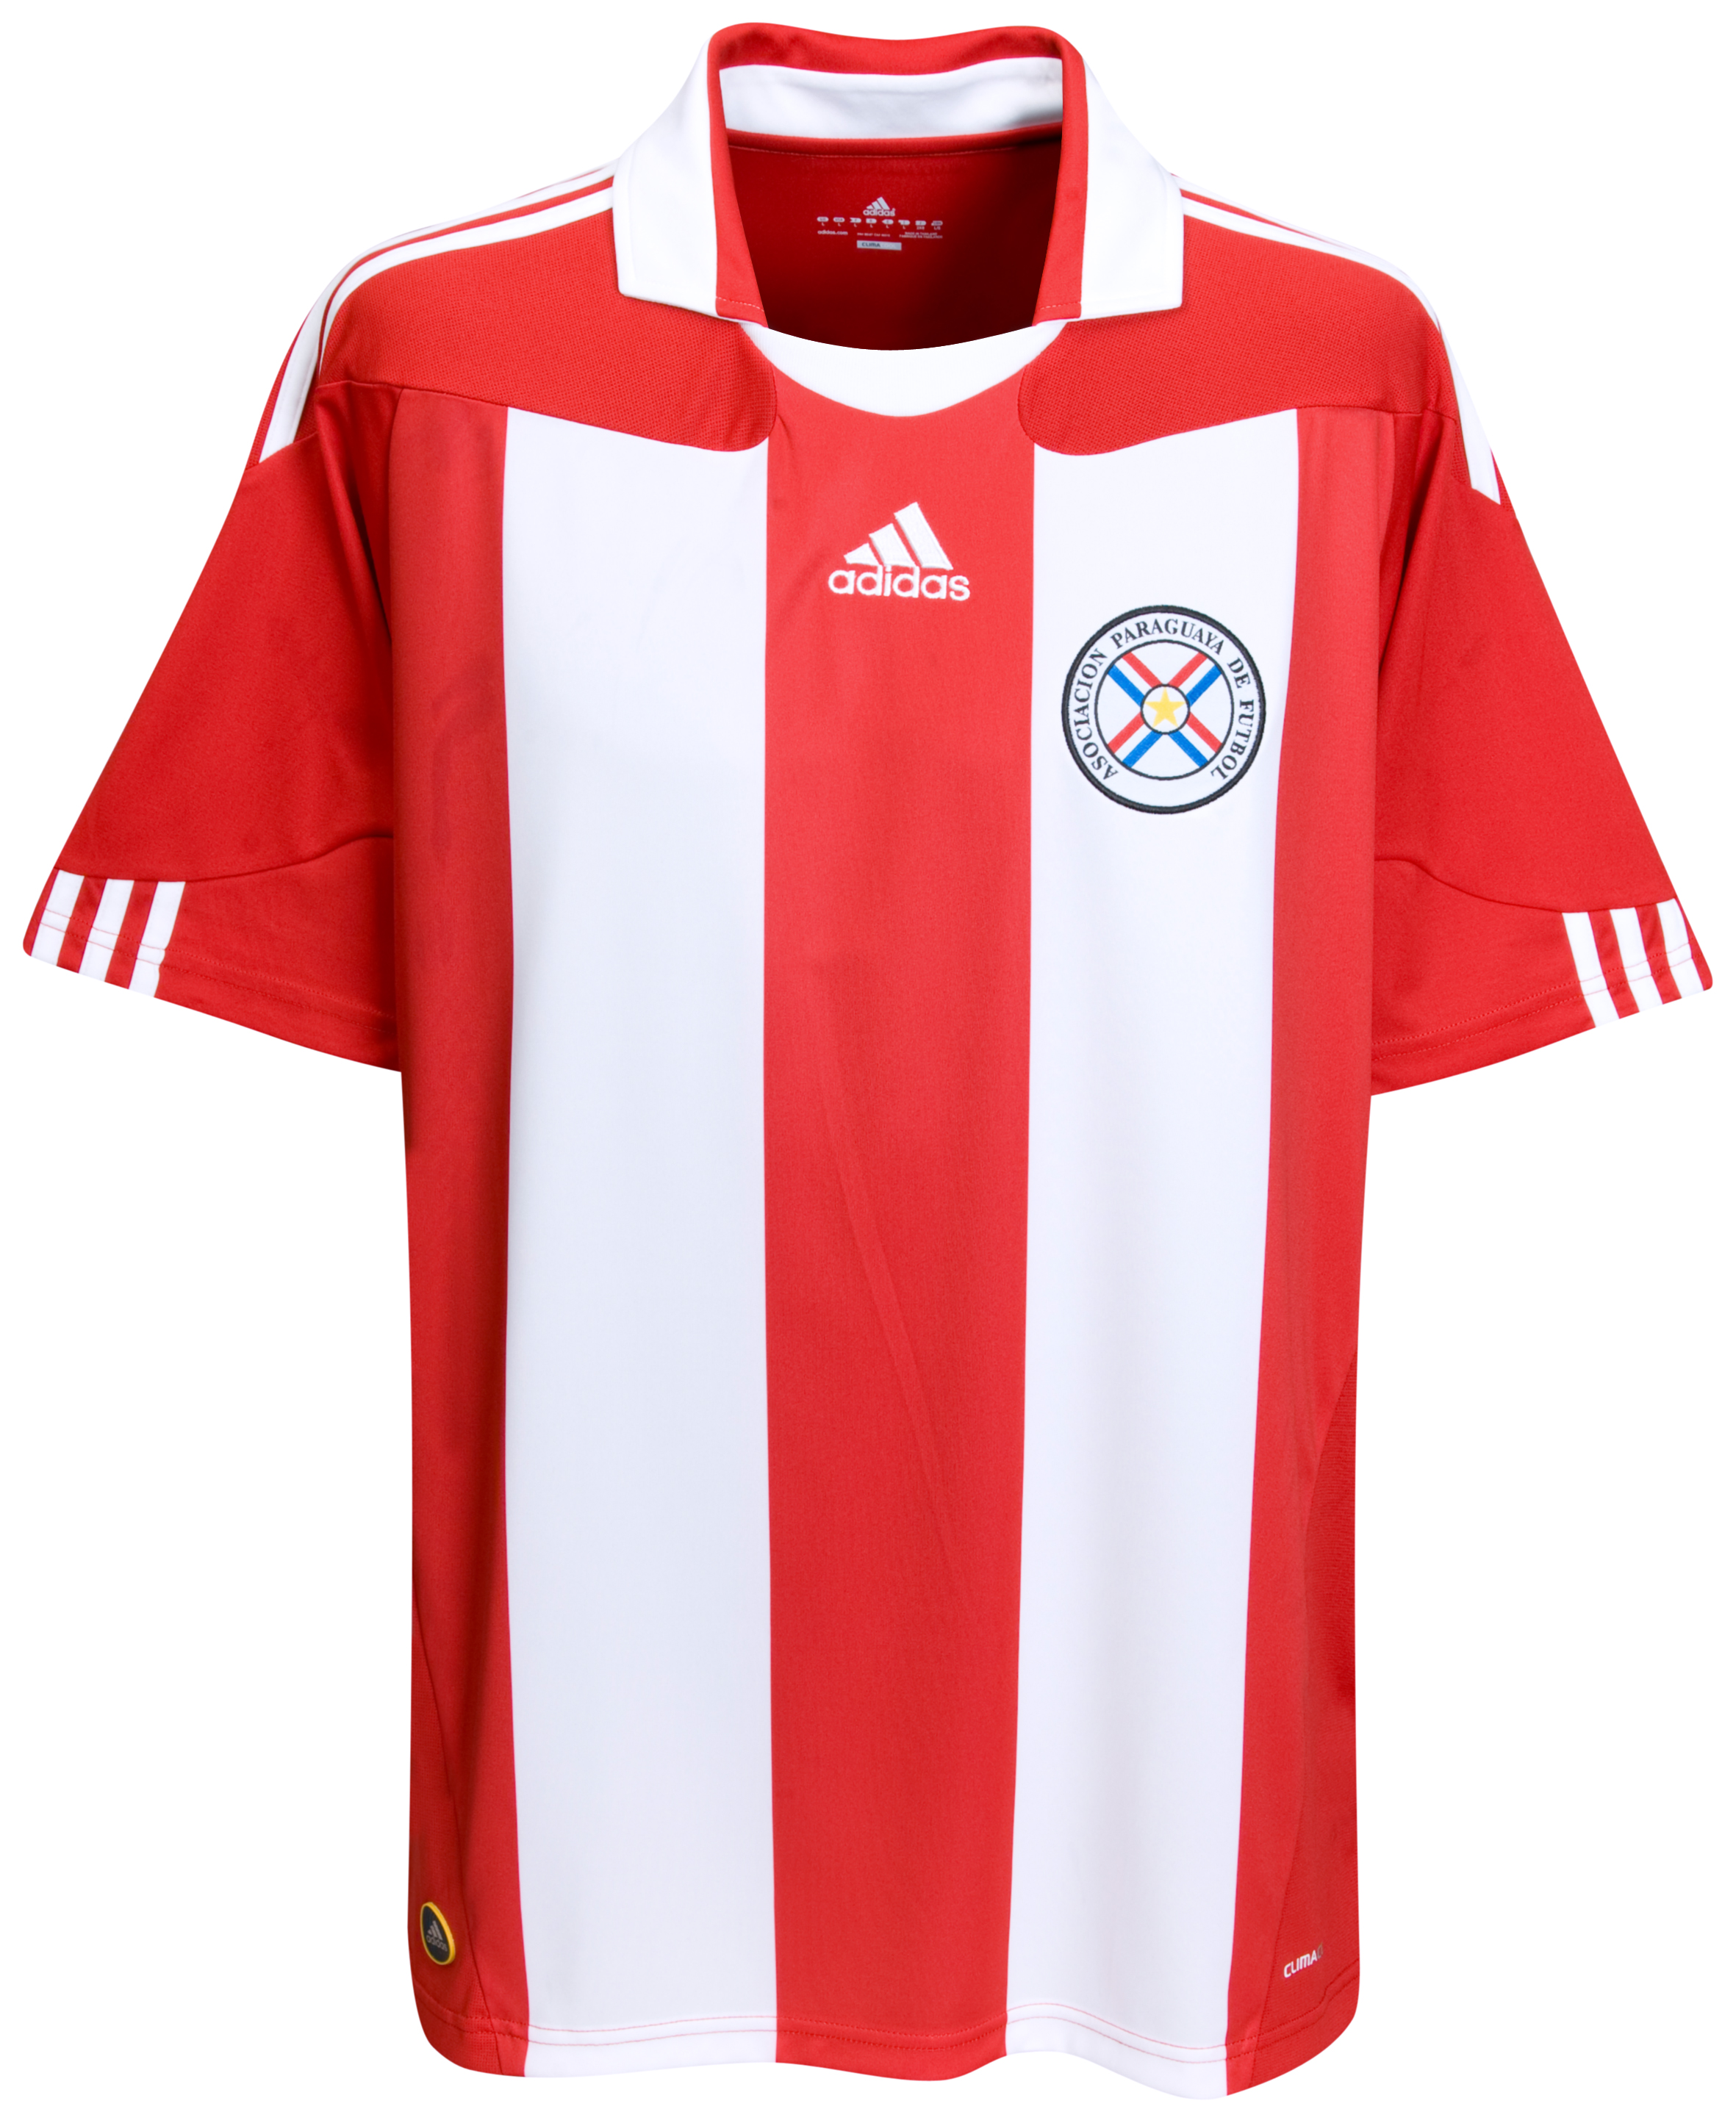 ملابس المنتخبات لكأس العالم2010م Kb-63747